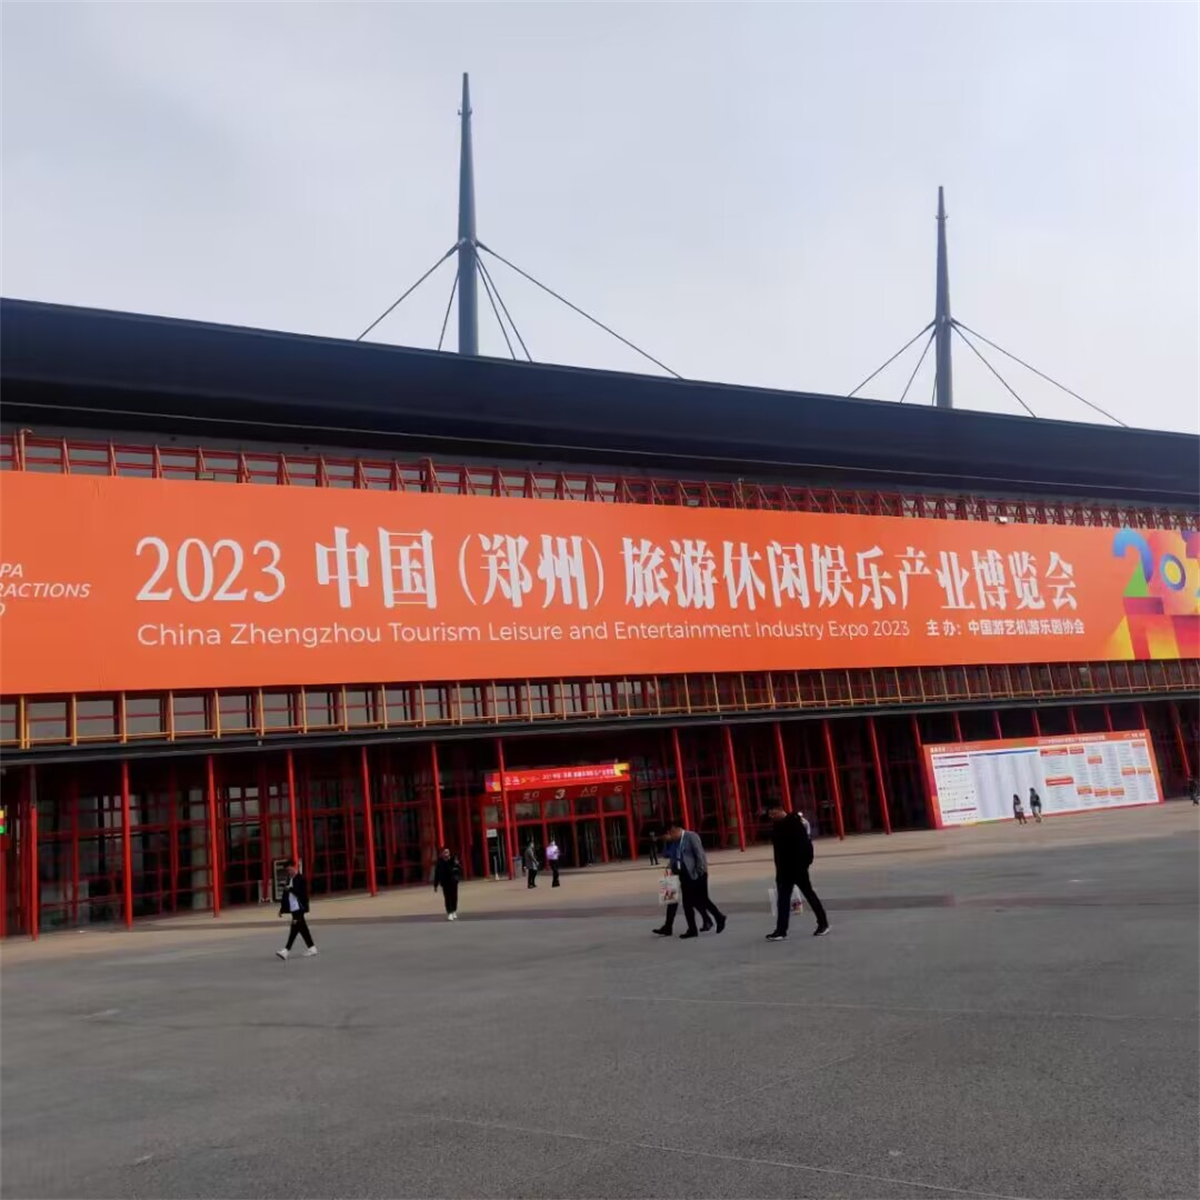 2023 China